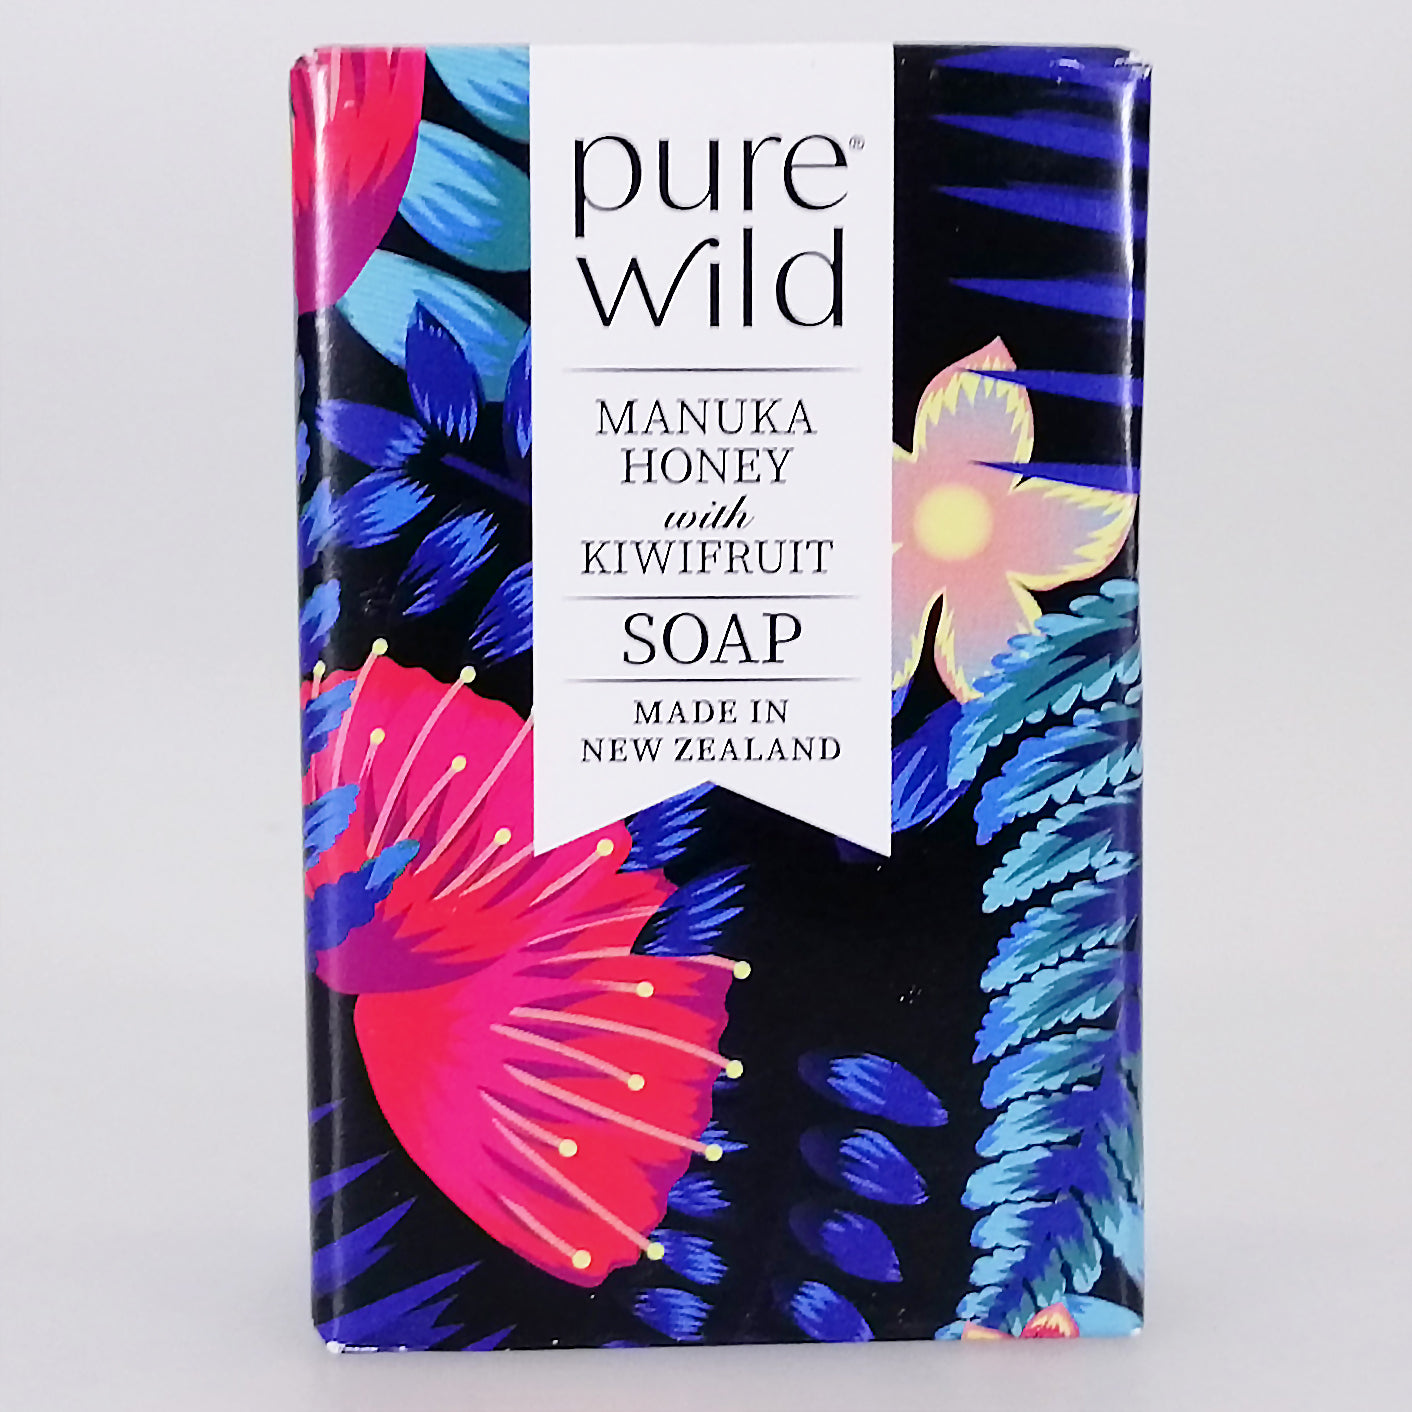 Purewild Manuka Honey & Kiwifruit Soap - Floral